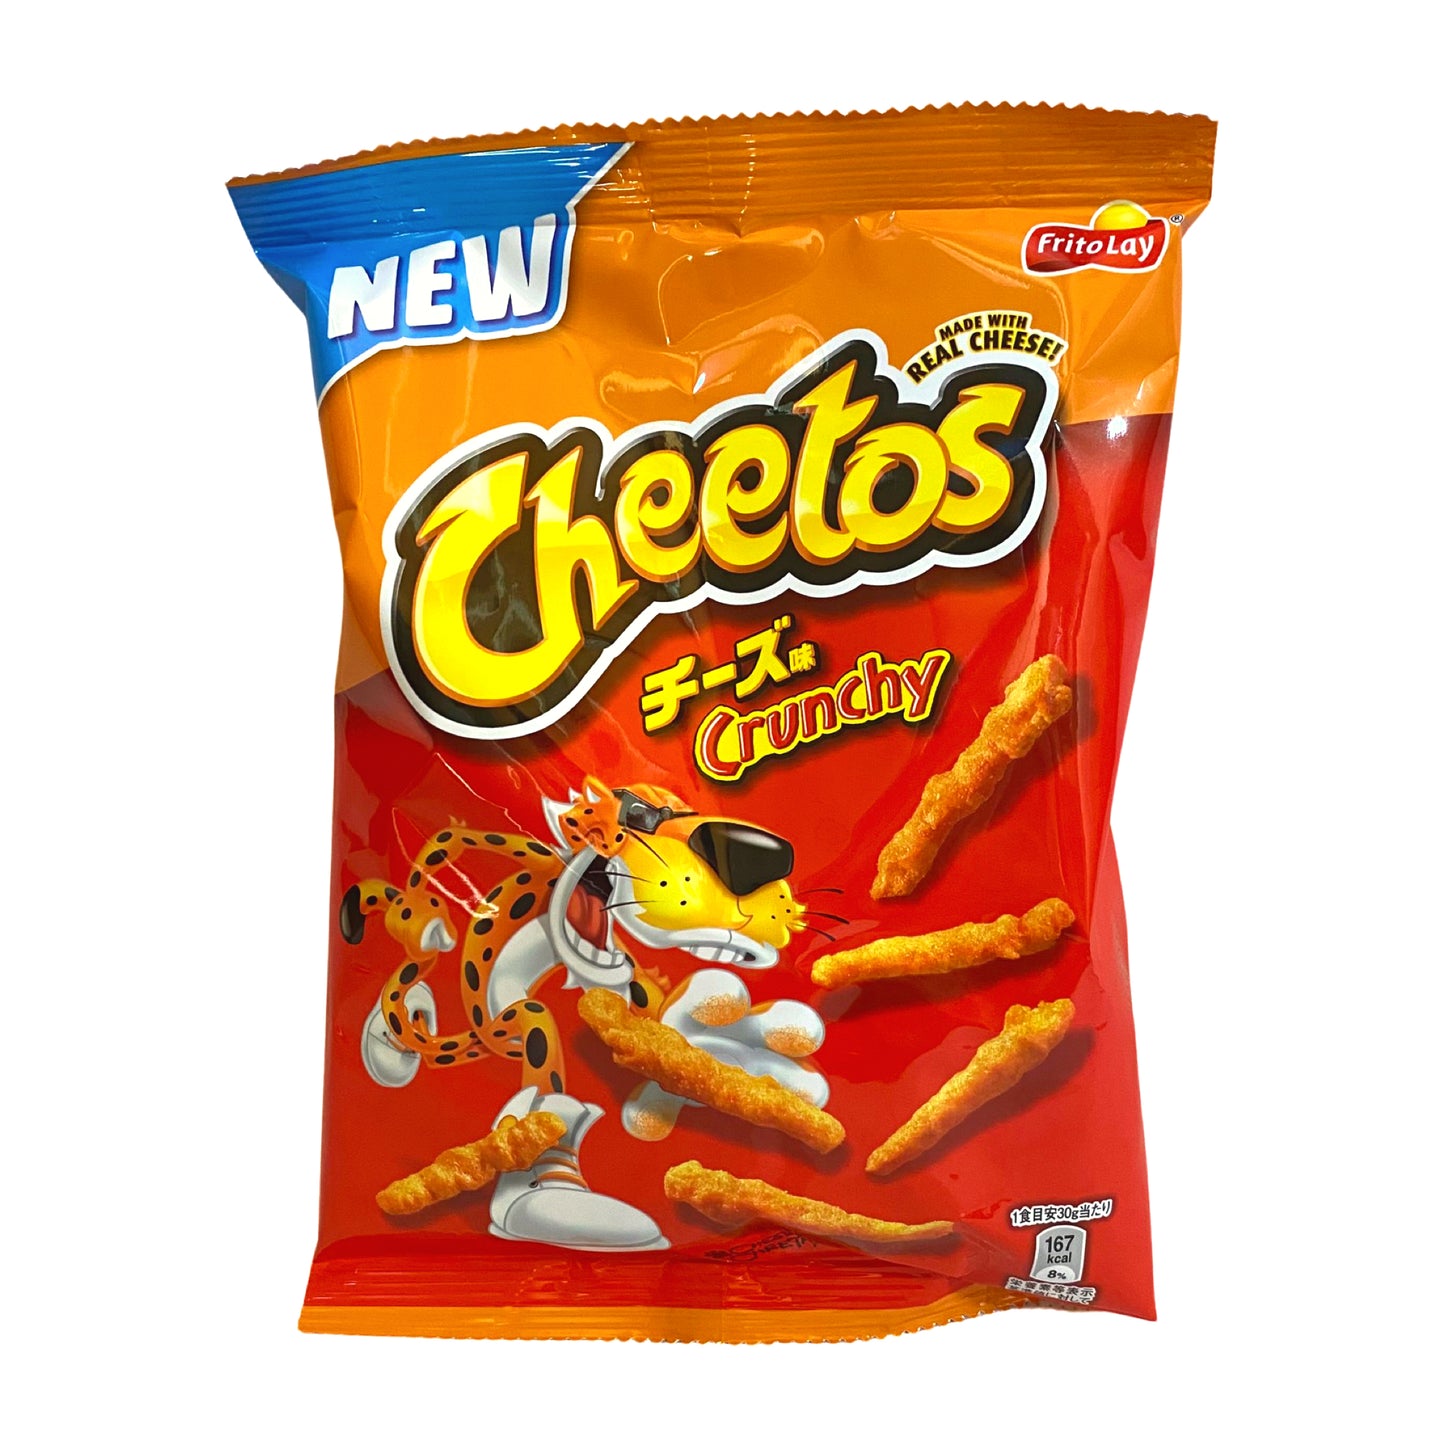 Cheetos - Original Japan